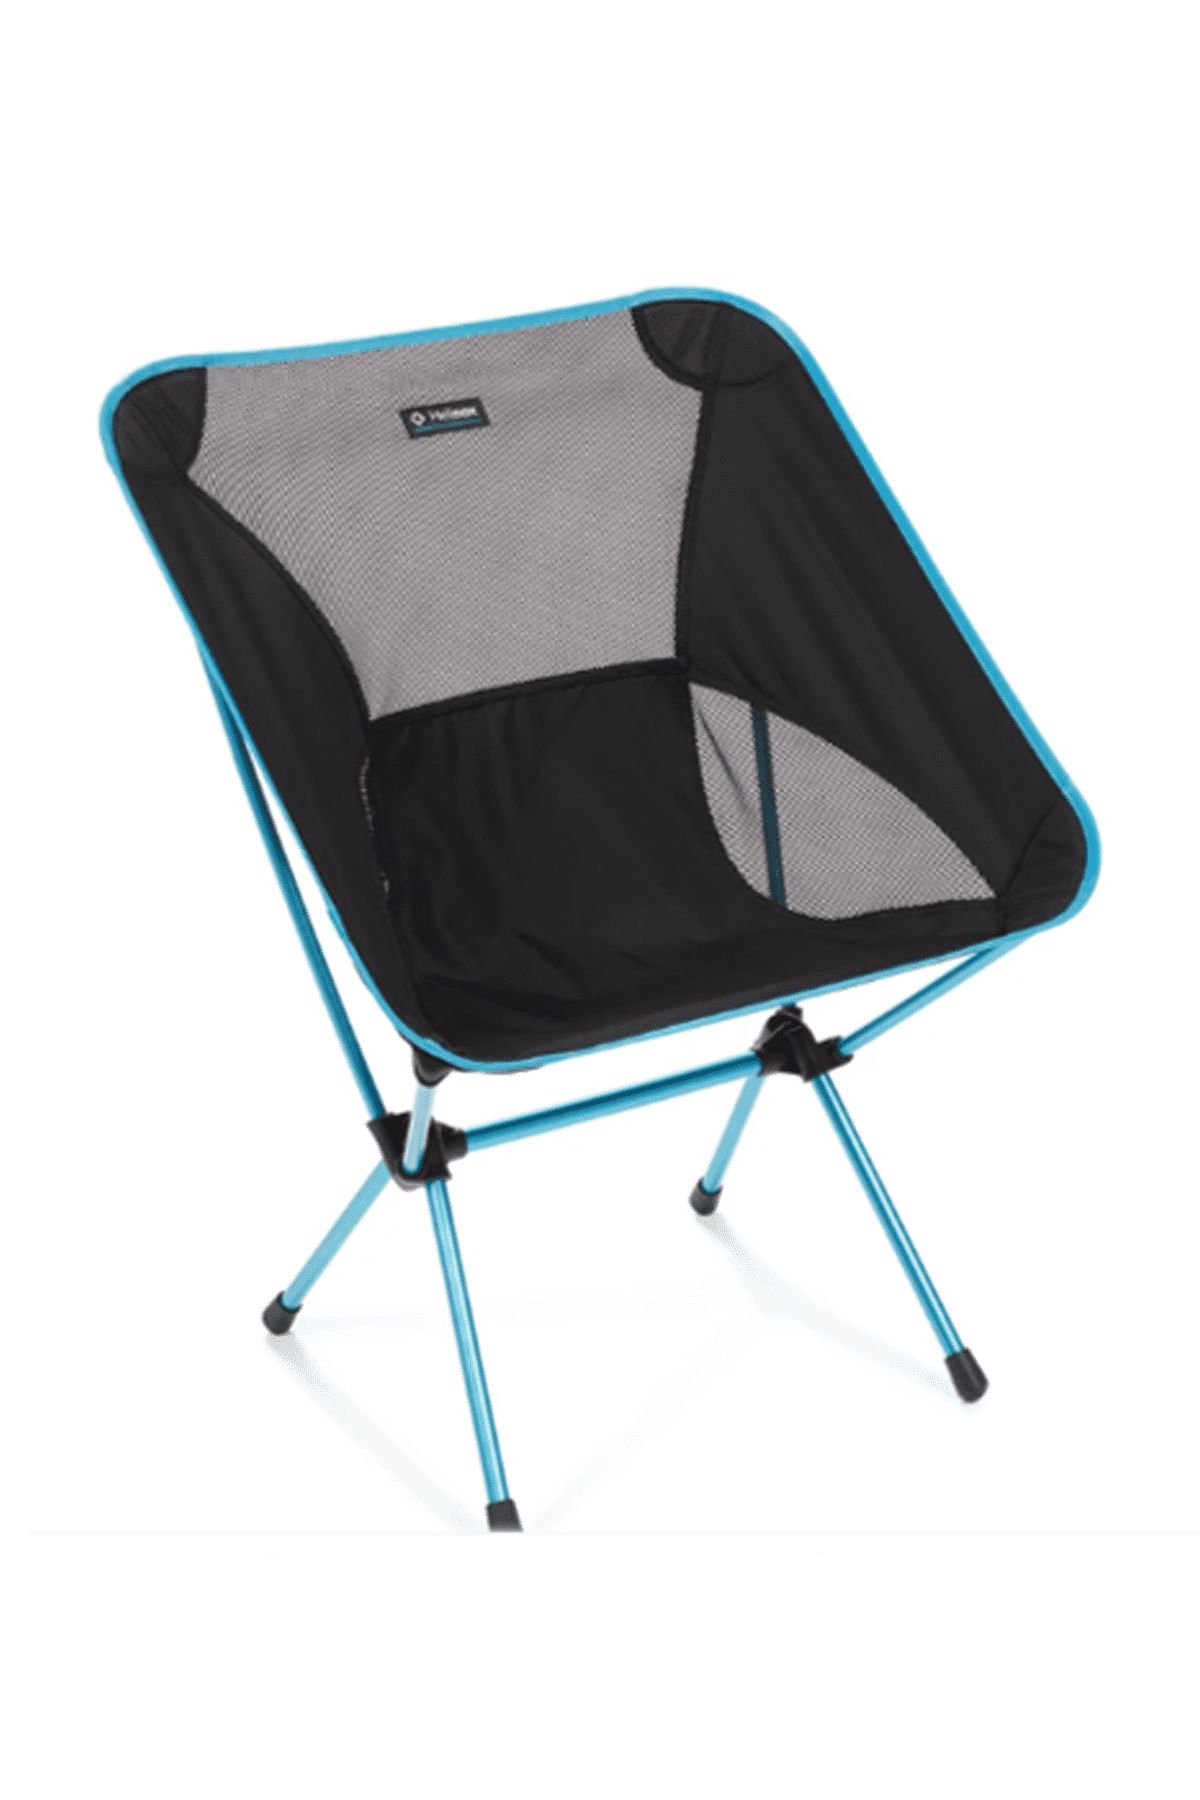 Helinox Chair One XL Outdoor Kamp Sandalyesi Black